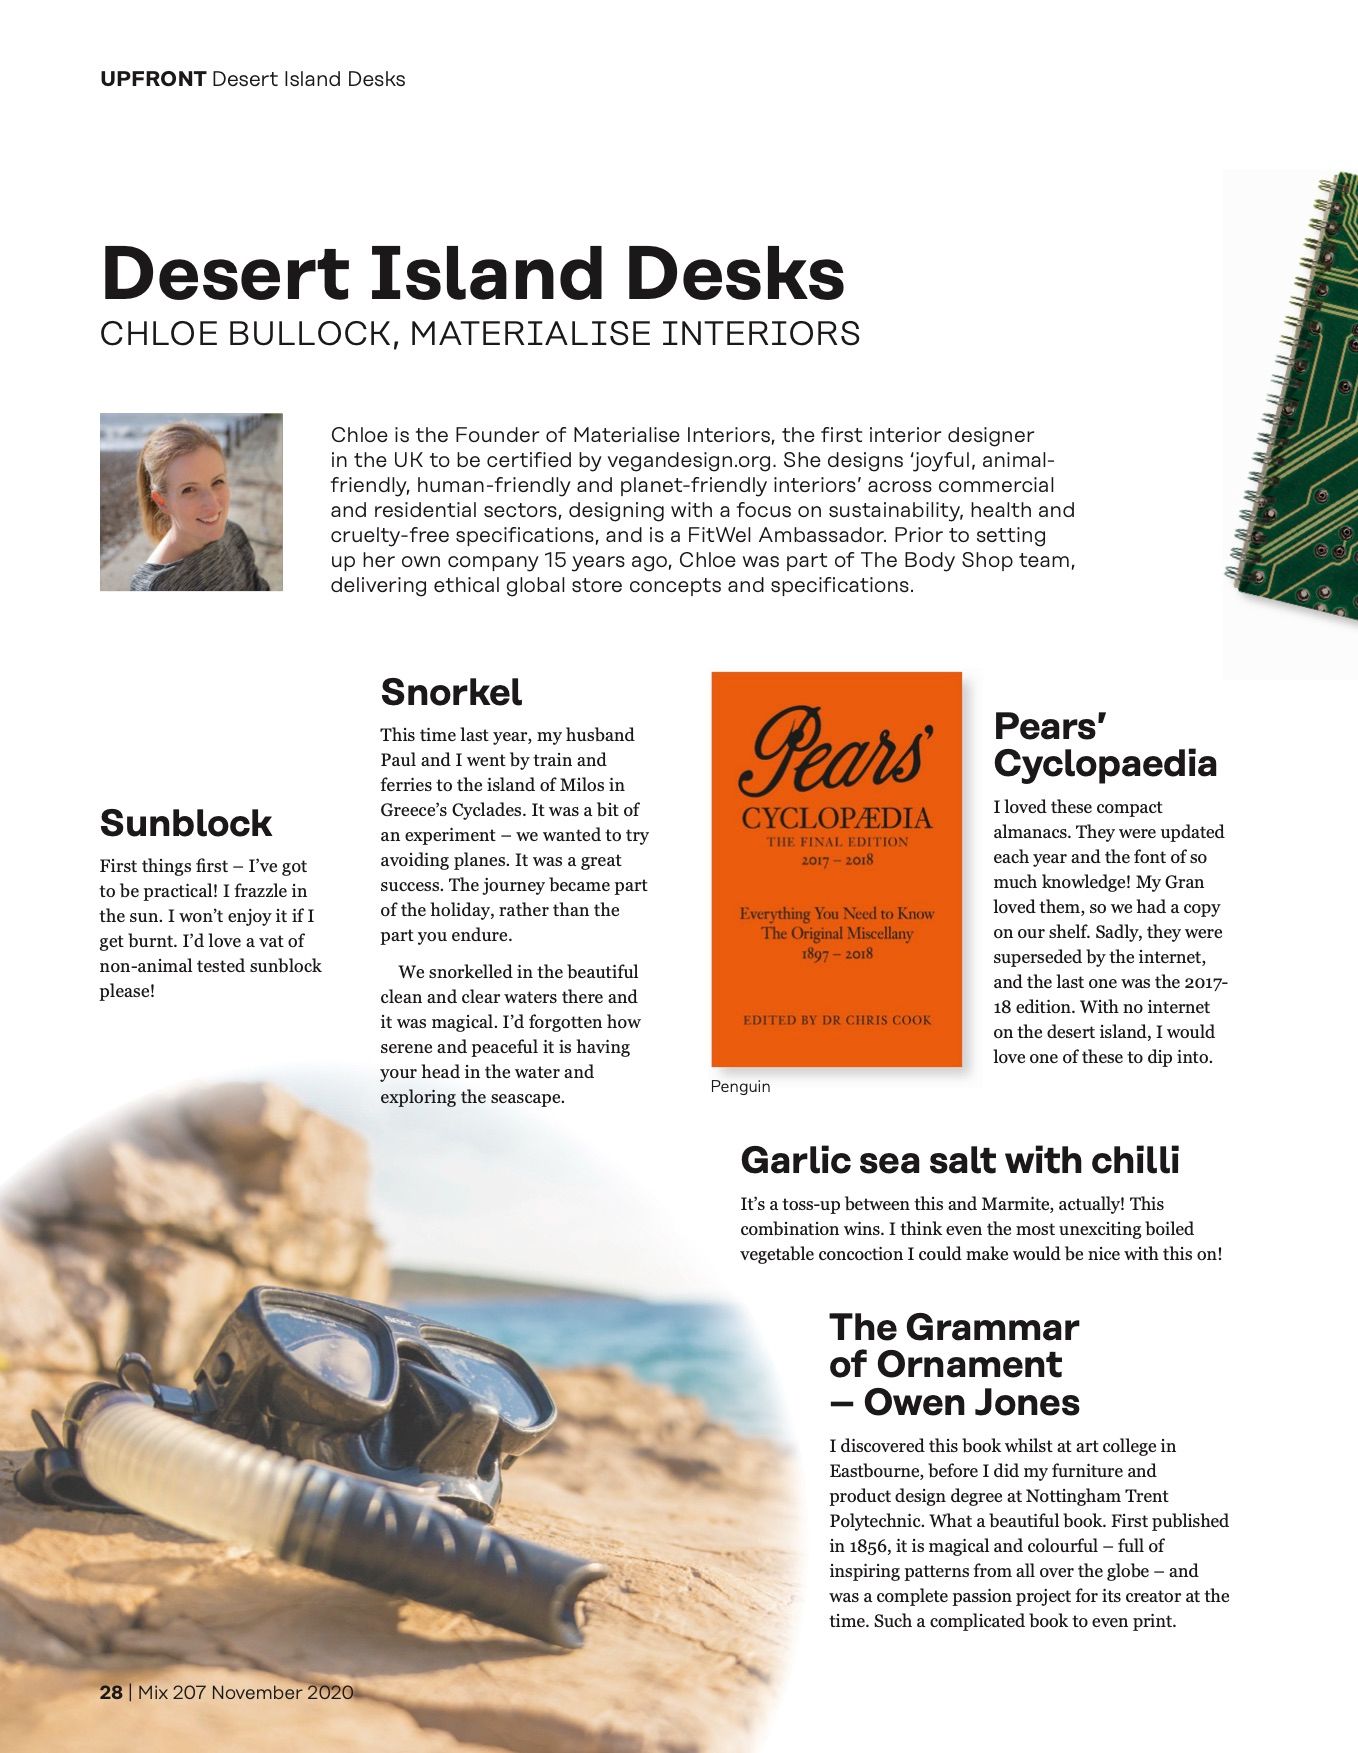 Desert Island Desks Mix Interiors magazine - November 2020